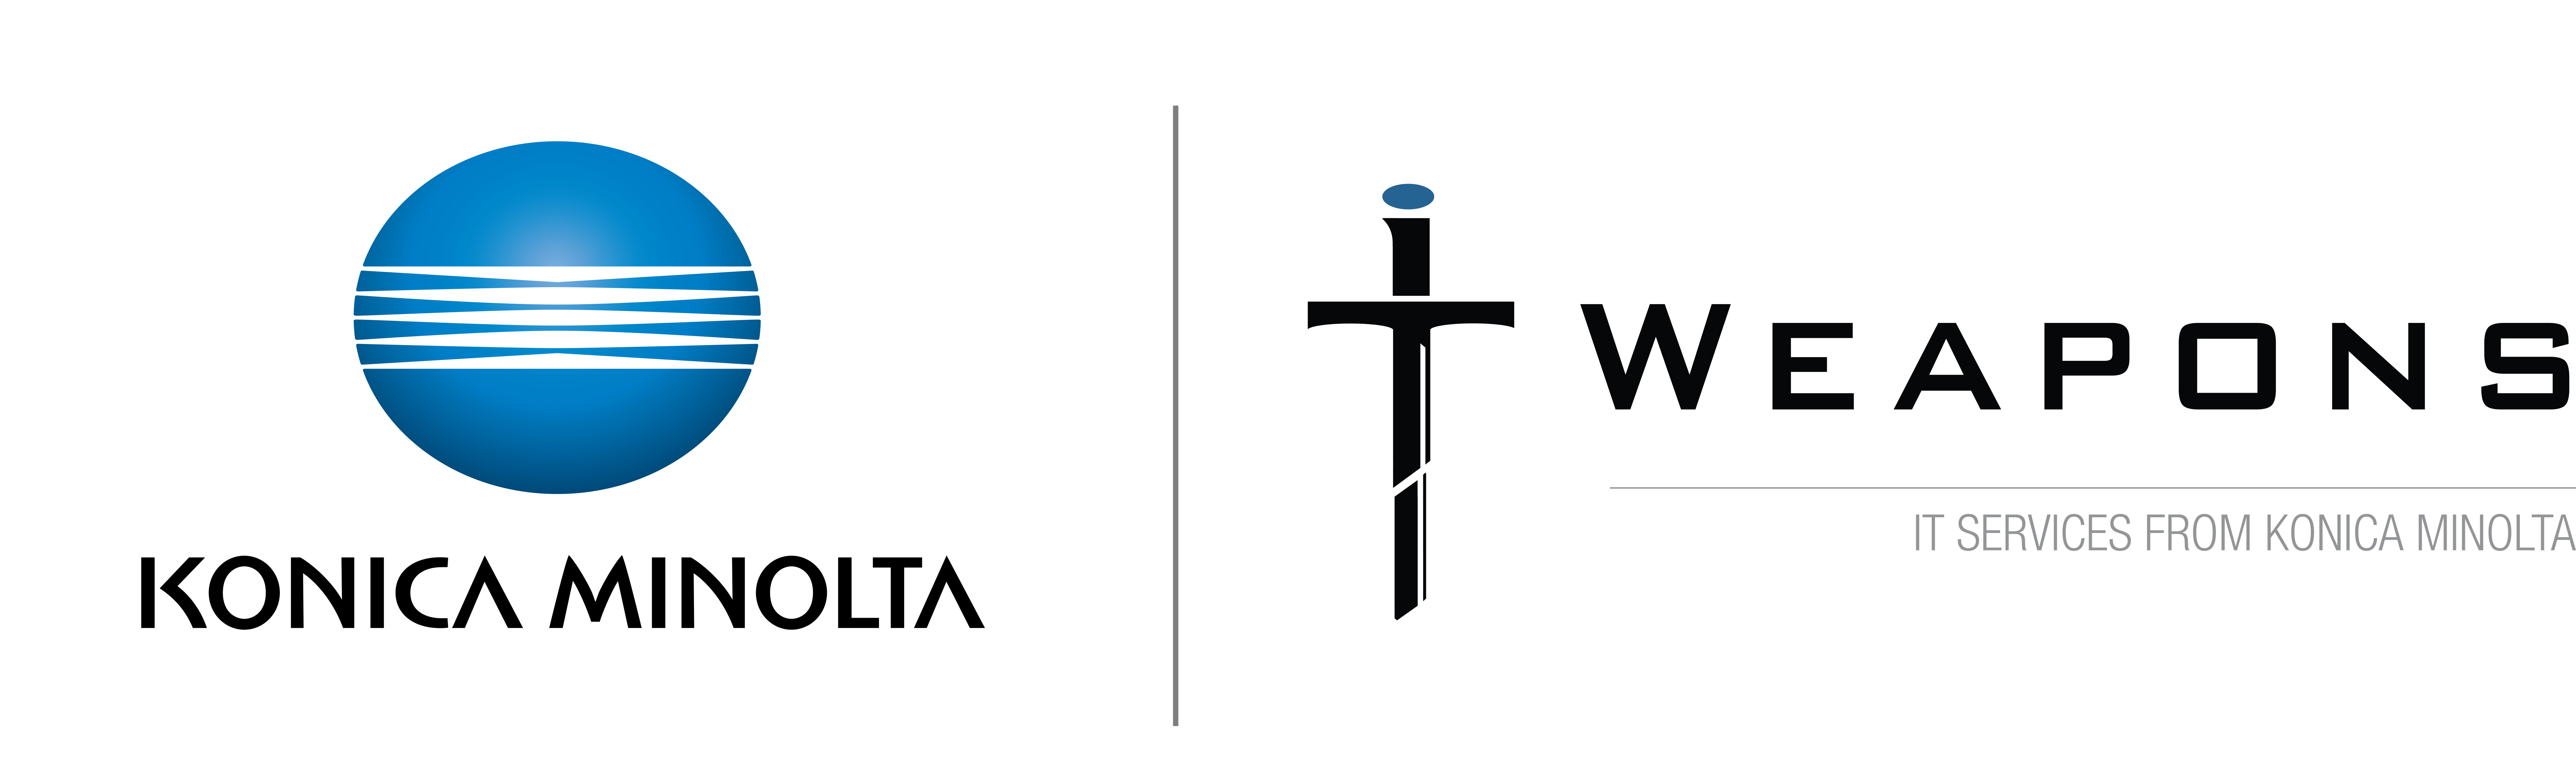 KM ITW logo-4